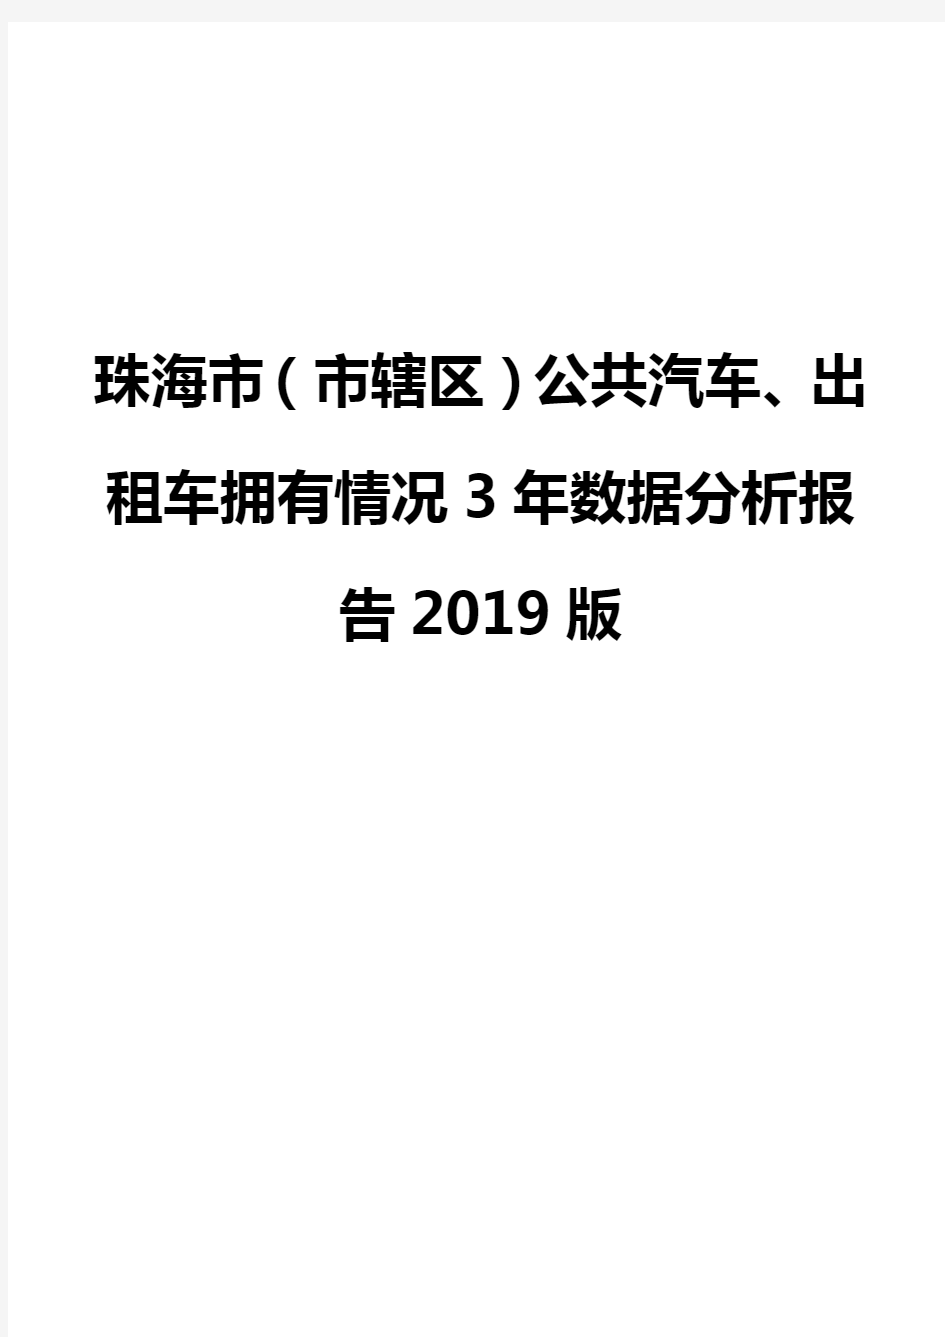 珠海市(市辖区)公共汽车、出租车拥有情况3年数据分析报告2019版